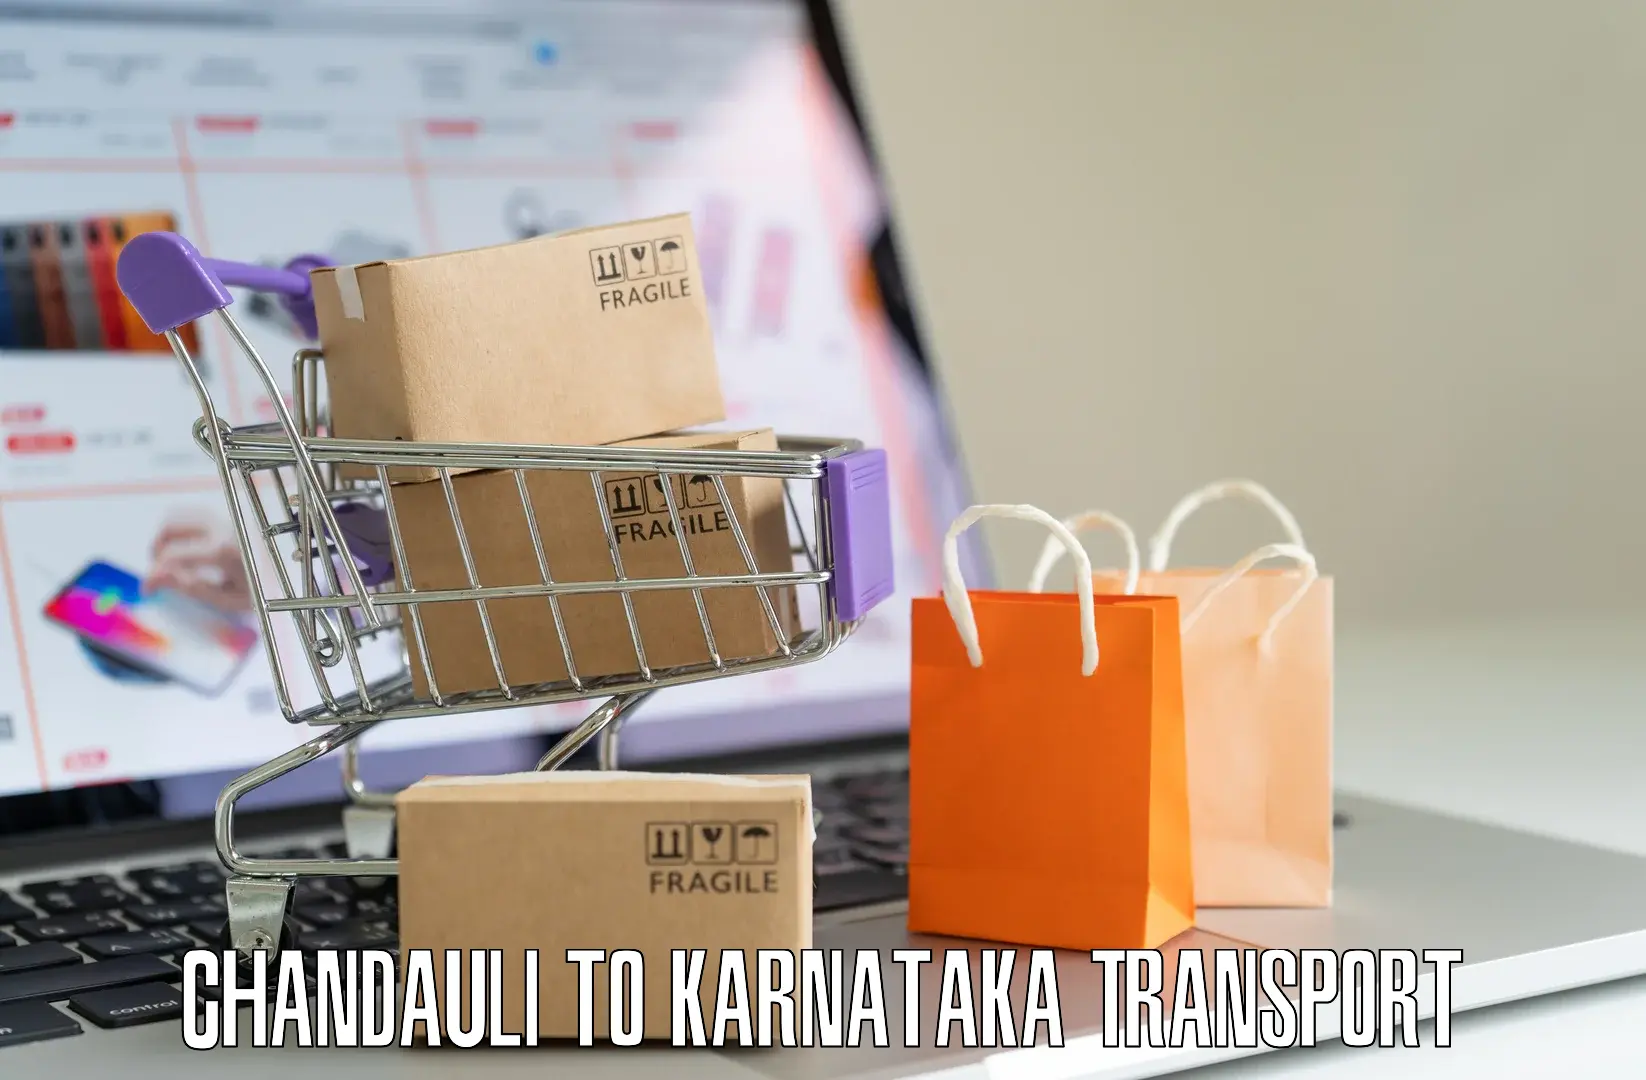 Transportation services Chandauli to Kanakapura